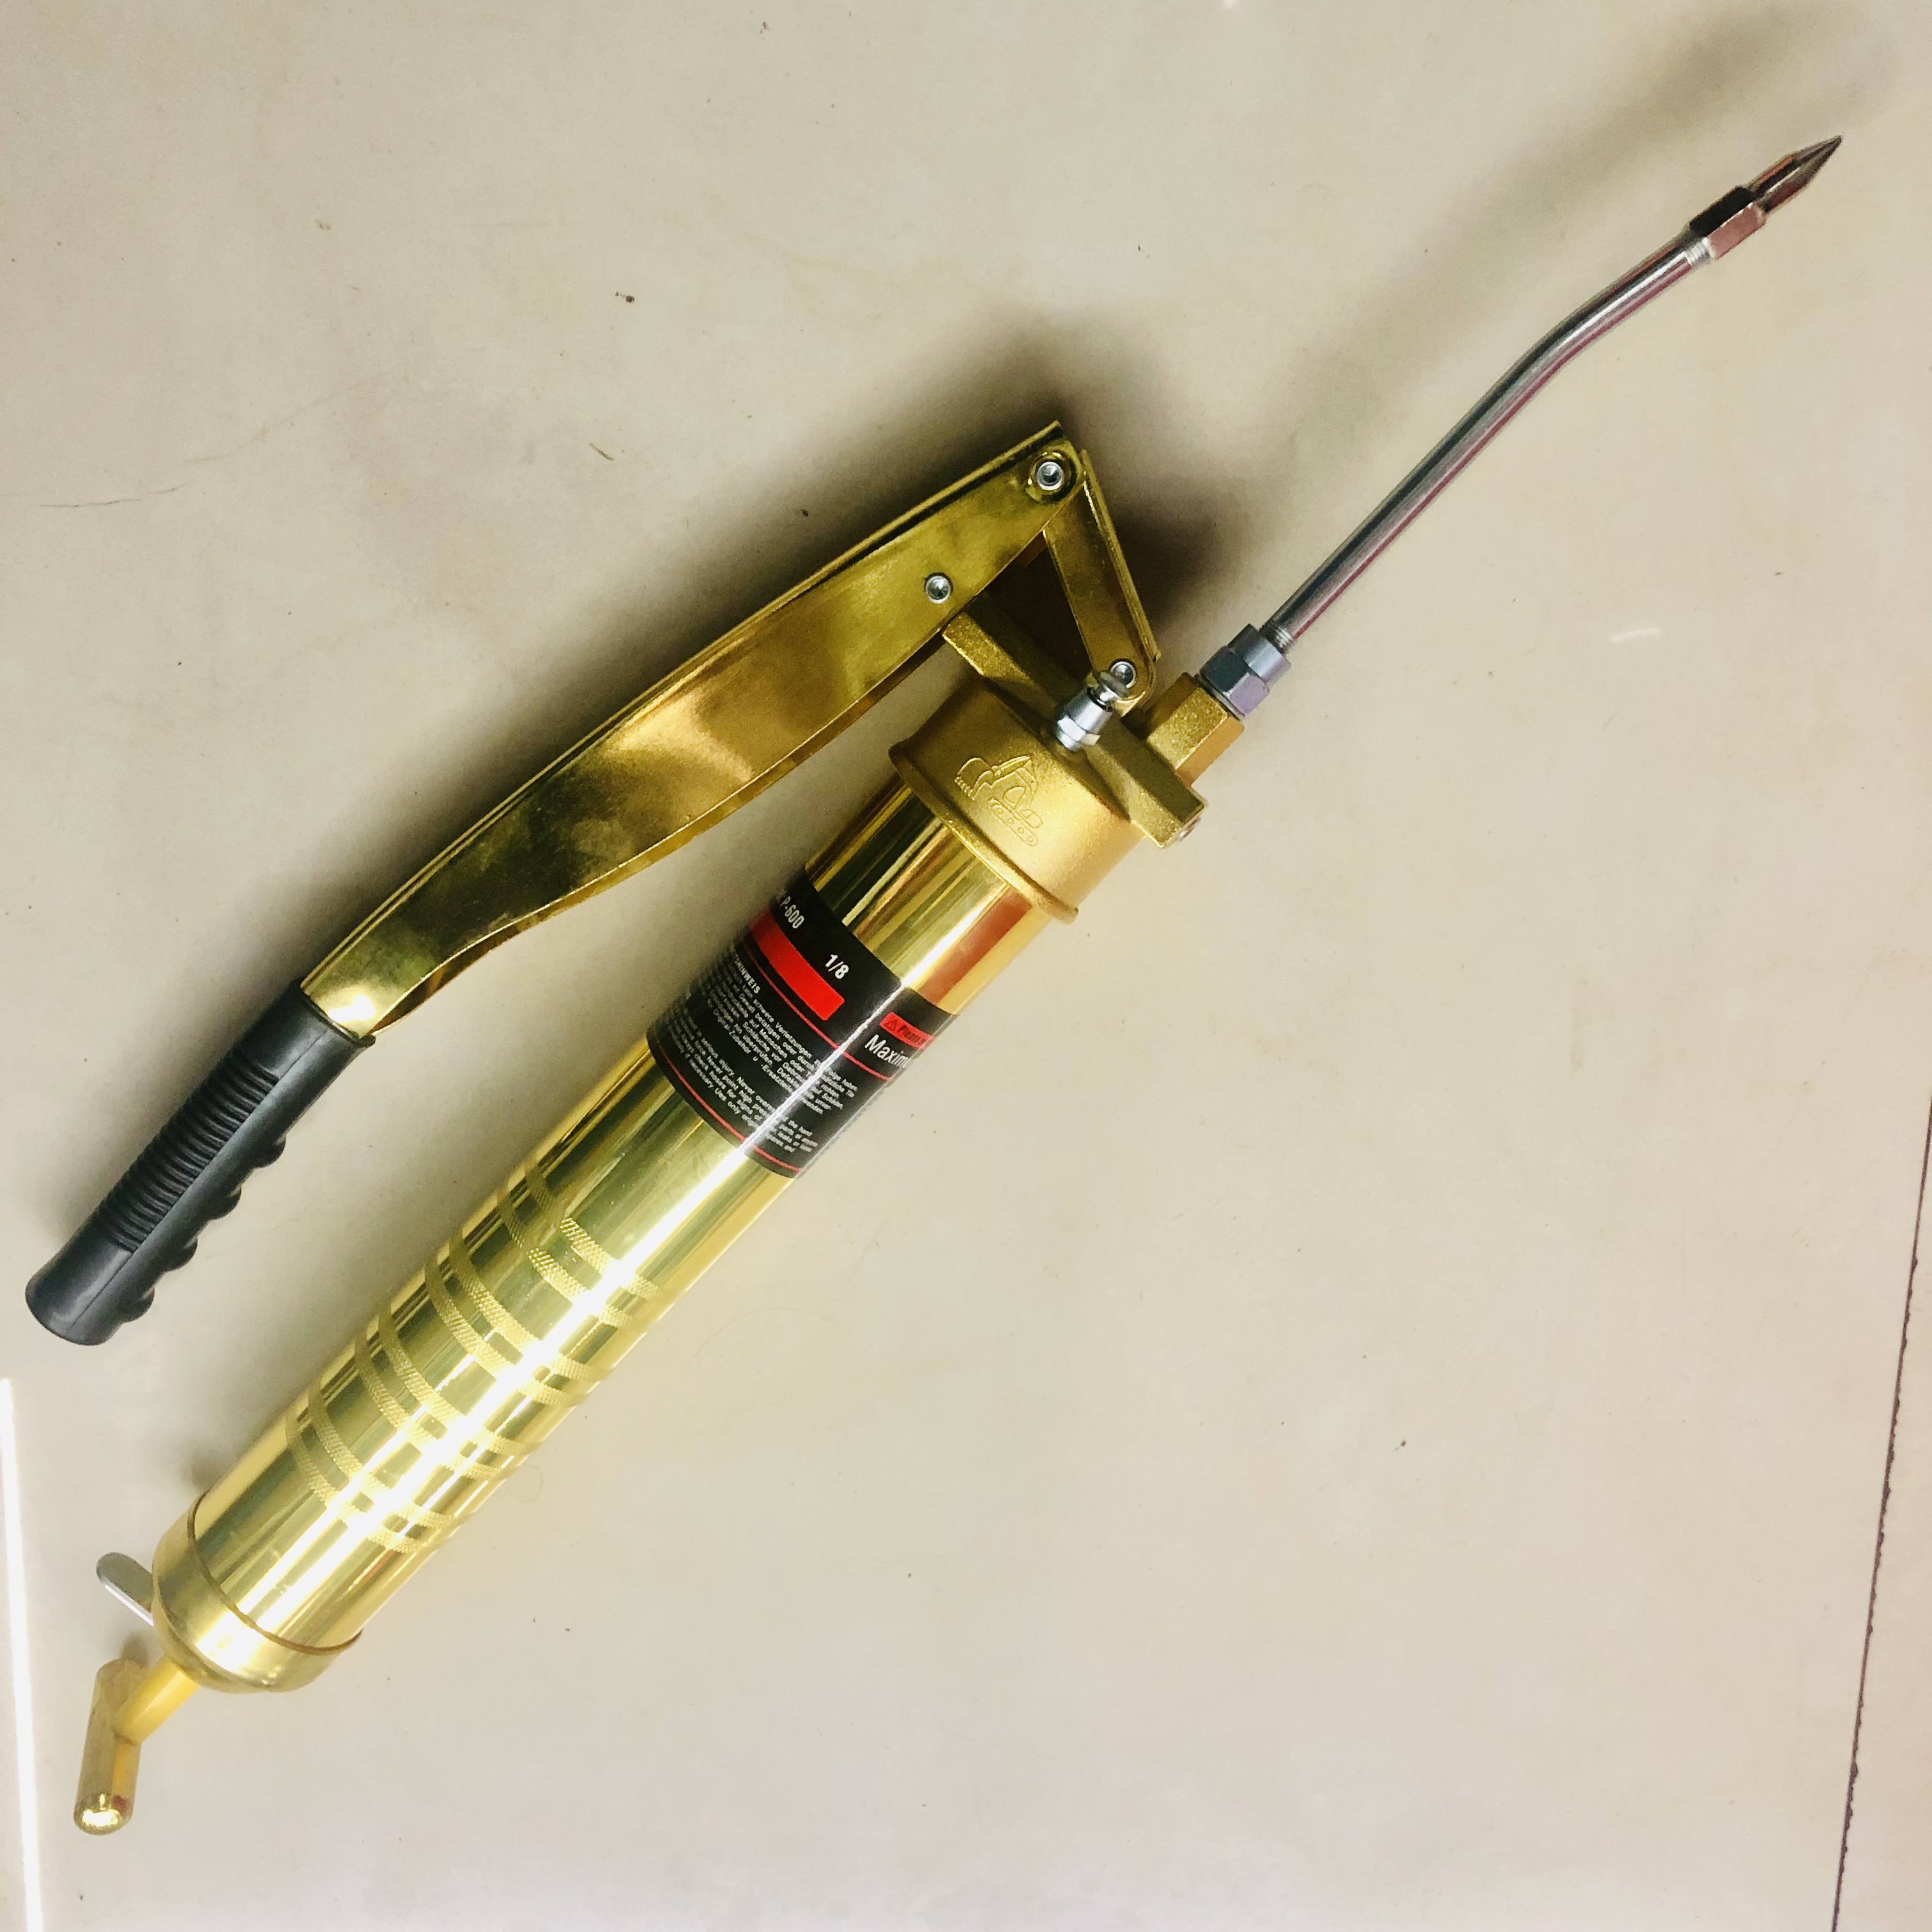 铝管黄油枪采用无缝铝管制造,使用特种橡胶,防止老化